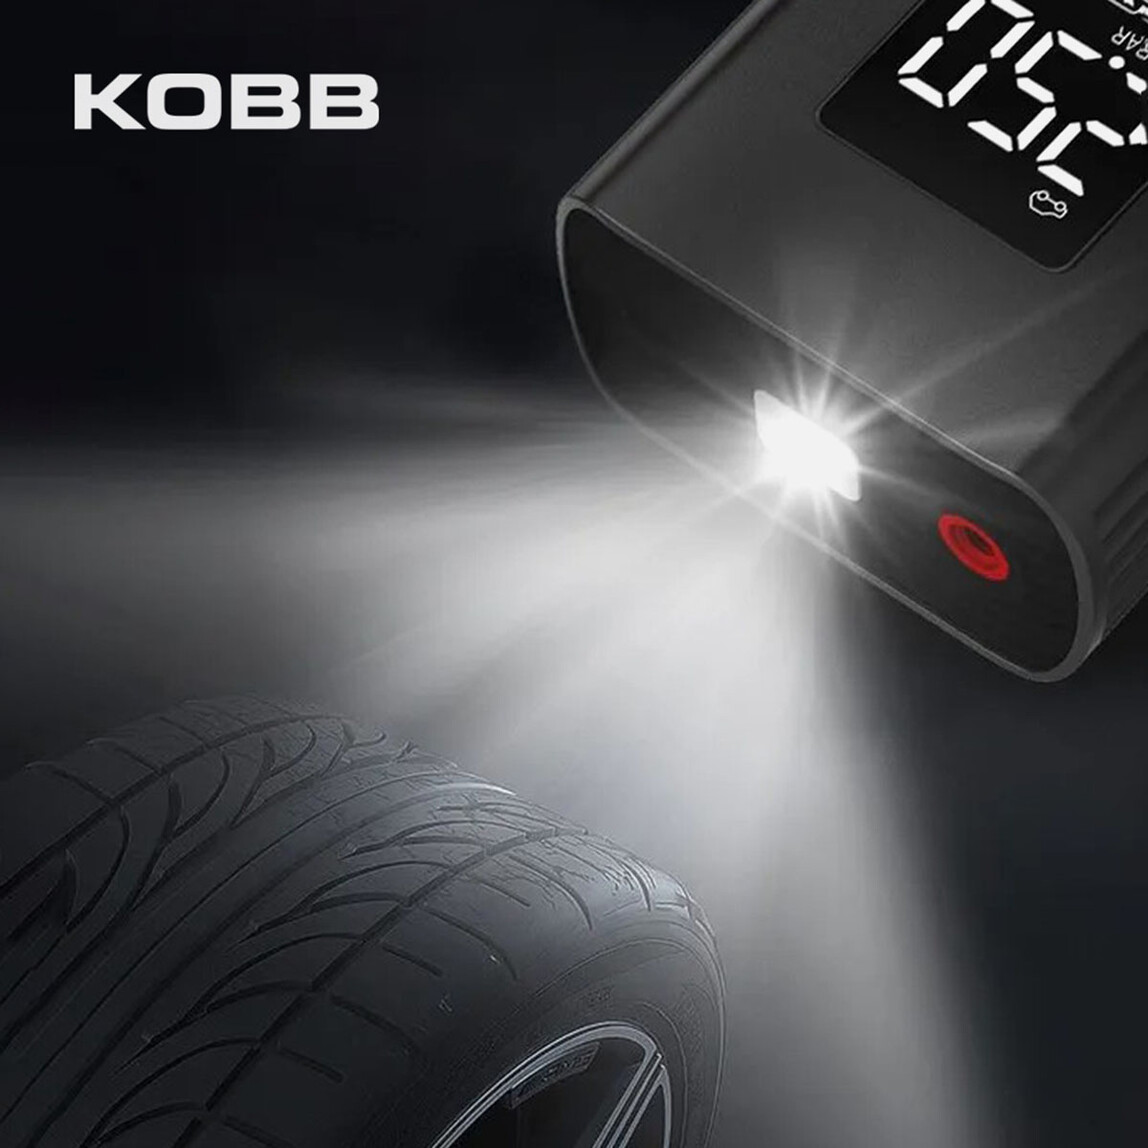    KOBB KB425 12V / Şarjlı Li-ion 150 PSI Dijital Göstergeli Akıllı Lastik Şişirme Pompası+ Powerbank + SOS + Led Lamba  